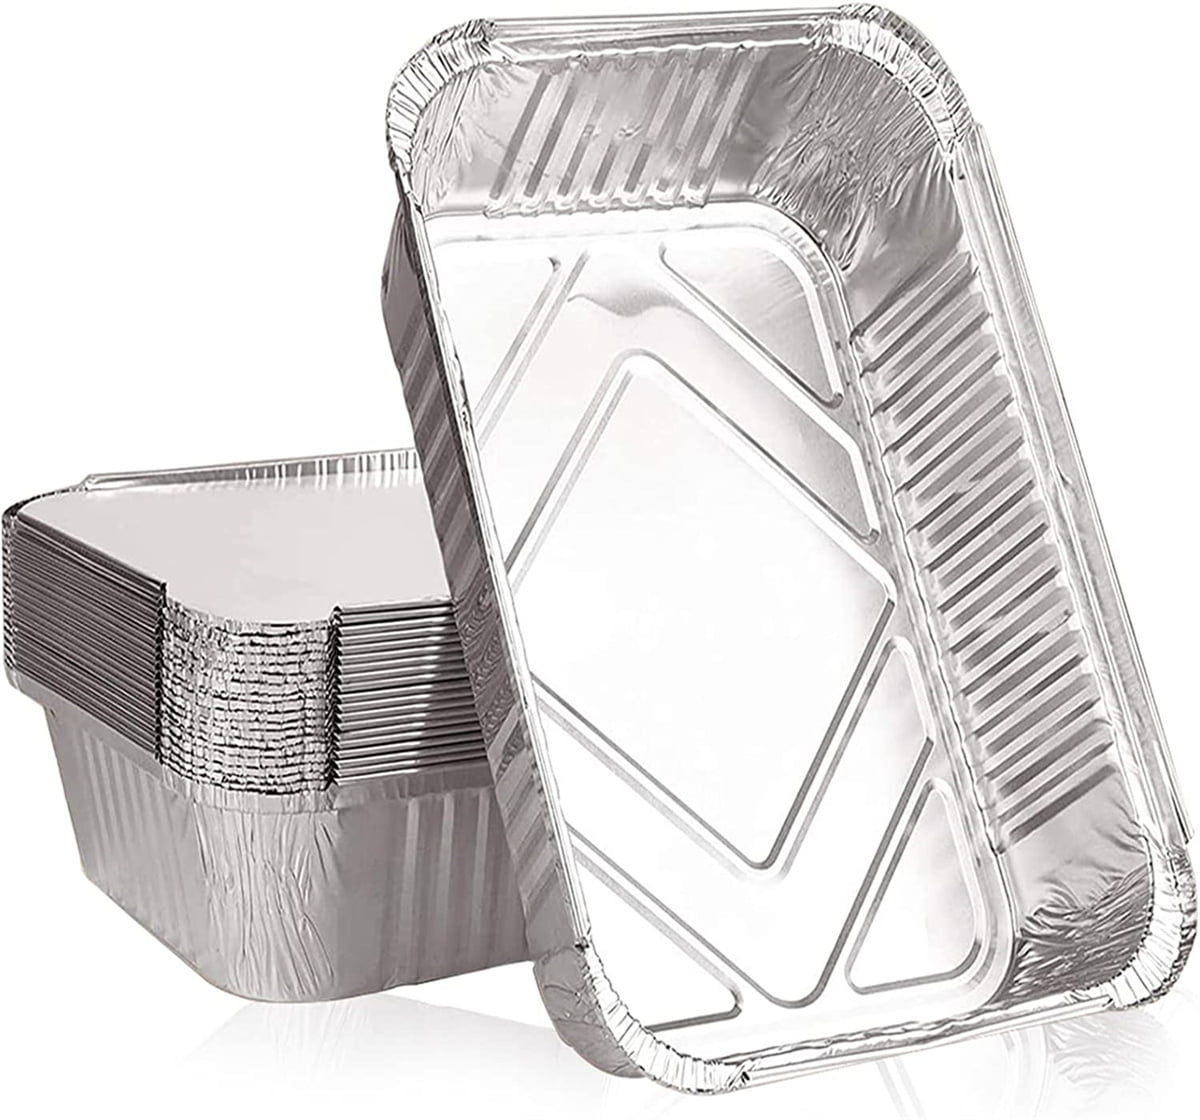  SuiXinCook Gold Aluminum Foil Pan with lids Heavy Duty